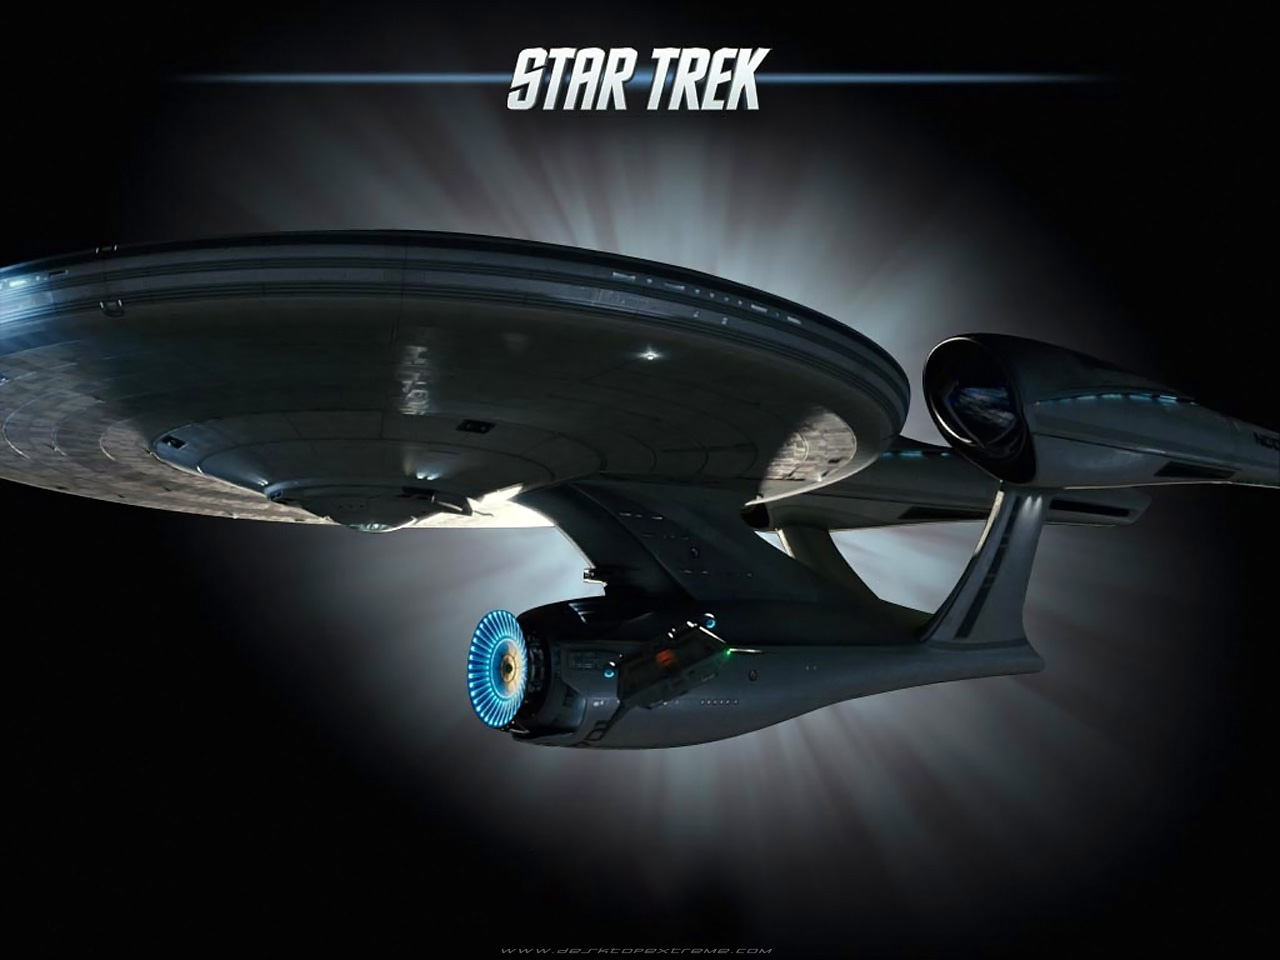 Star Trek Wallpaper By Desktopextreme For Your Desktop